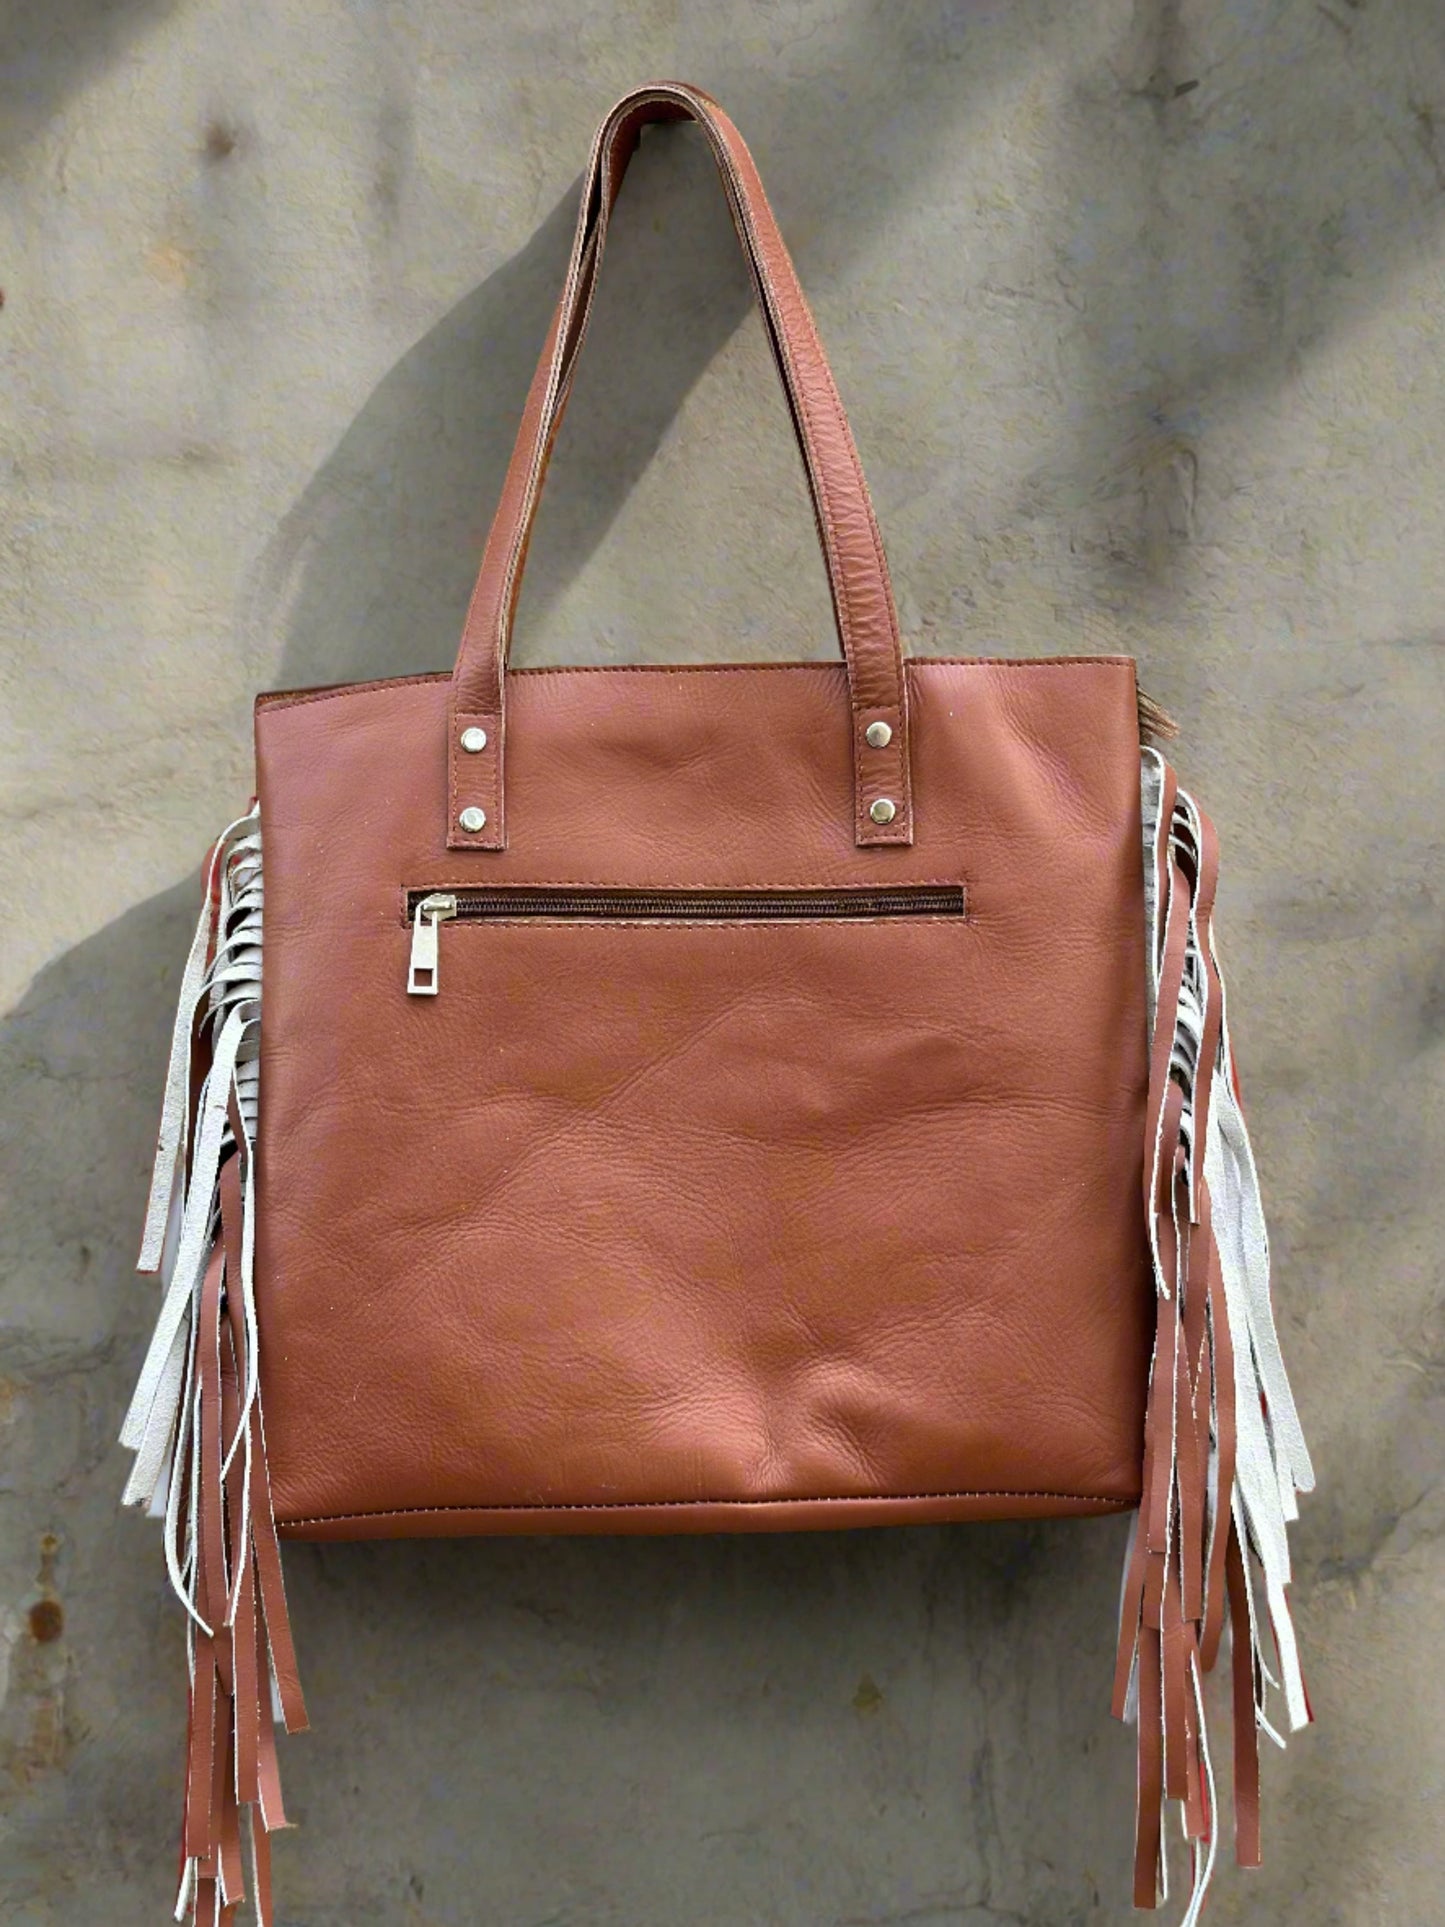 cowhide leather tote bag shoulder bag large genuine lather tote bag shoulder bag brown tote bag